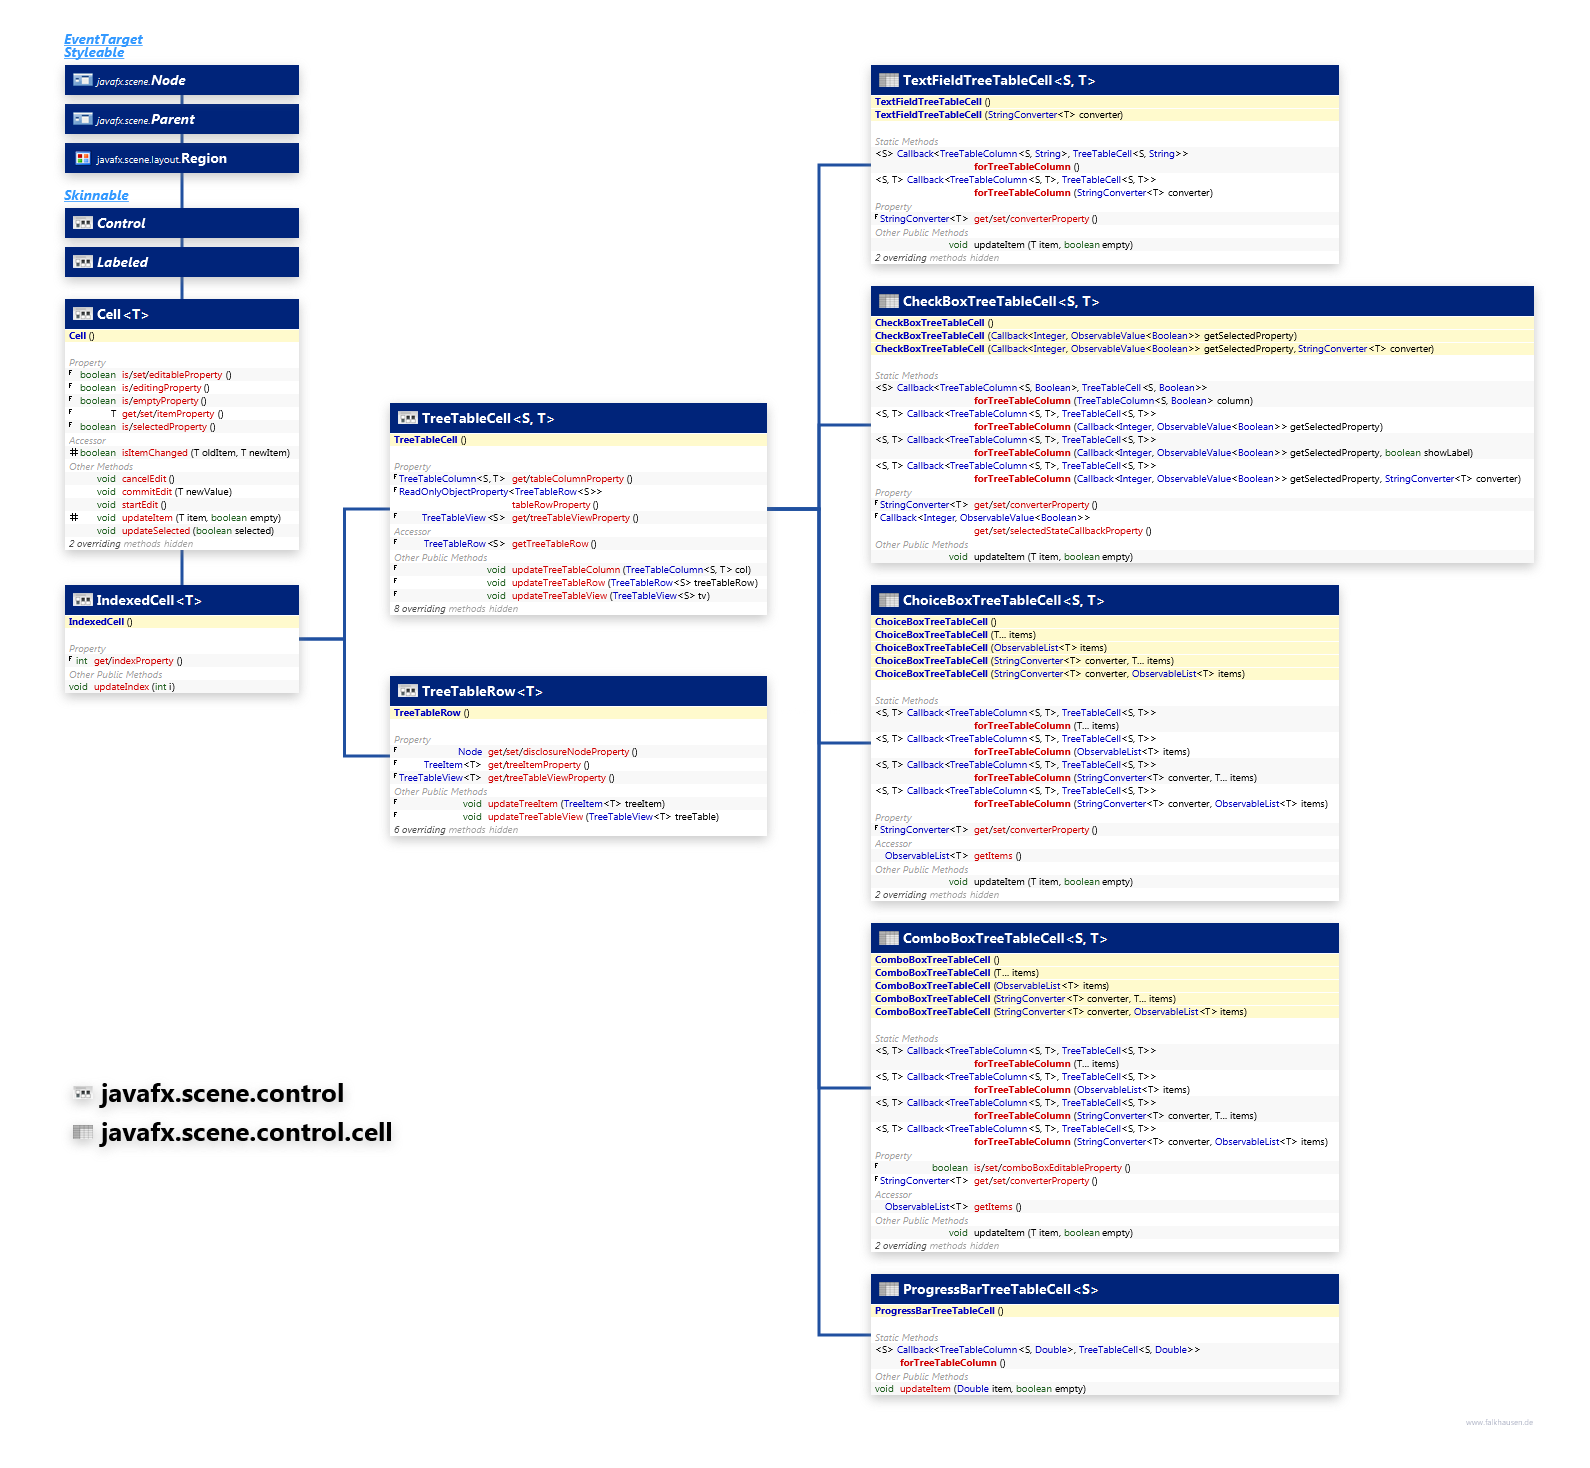 javafx.scene.control.cell javafx.scene.control TreeTableCell class diagram and api documentation for JavaFX 10